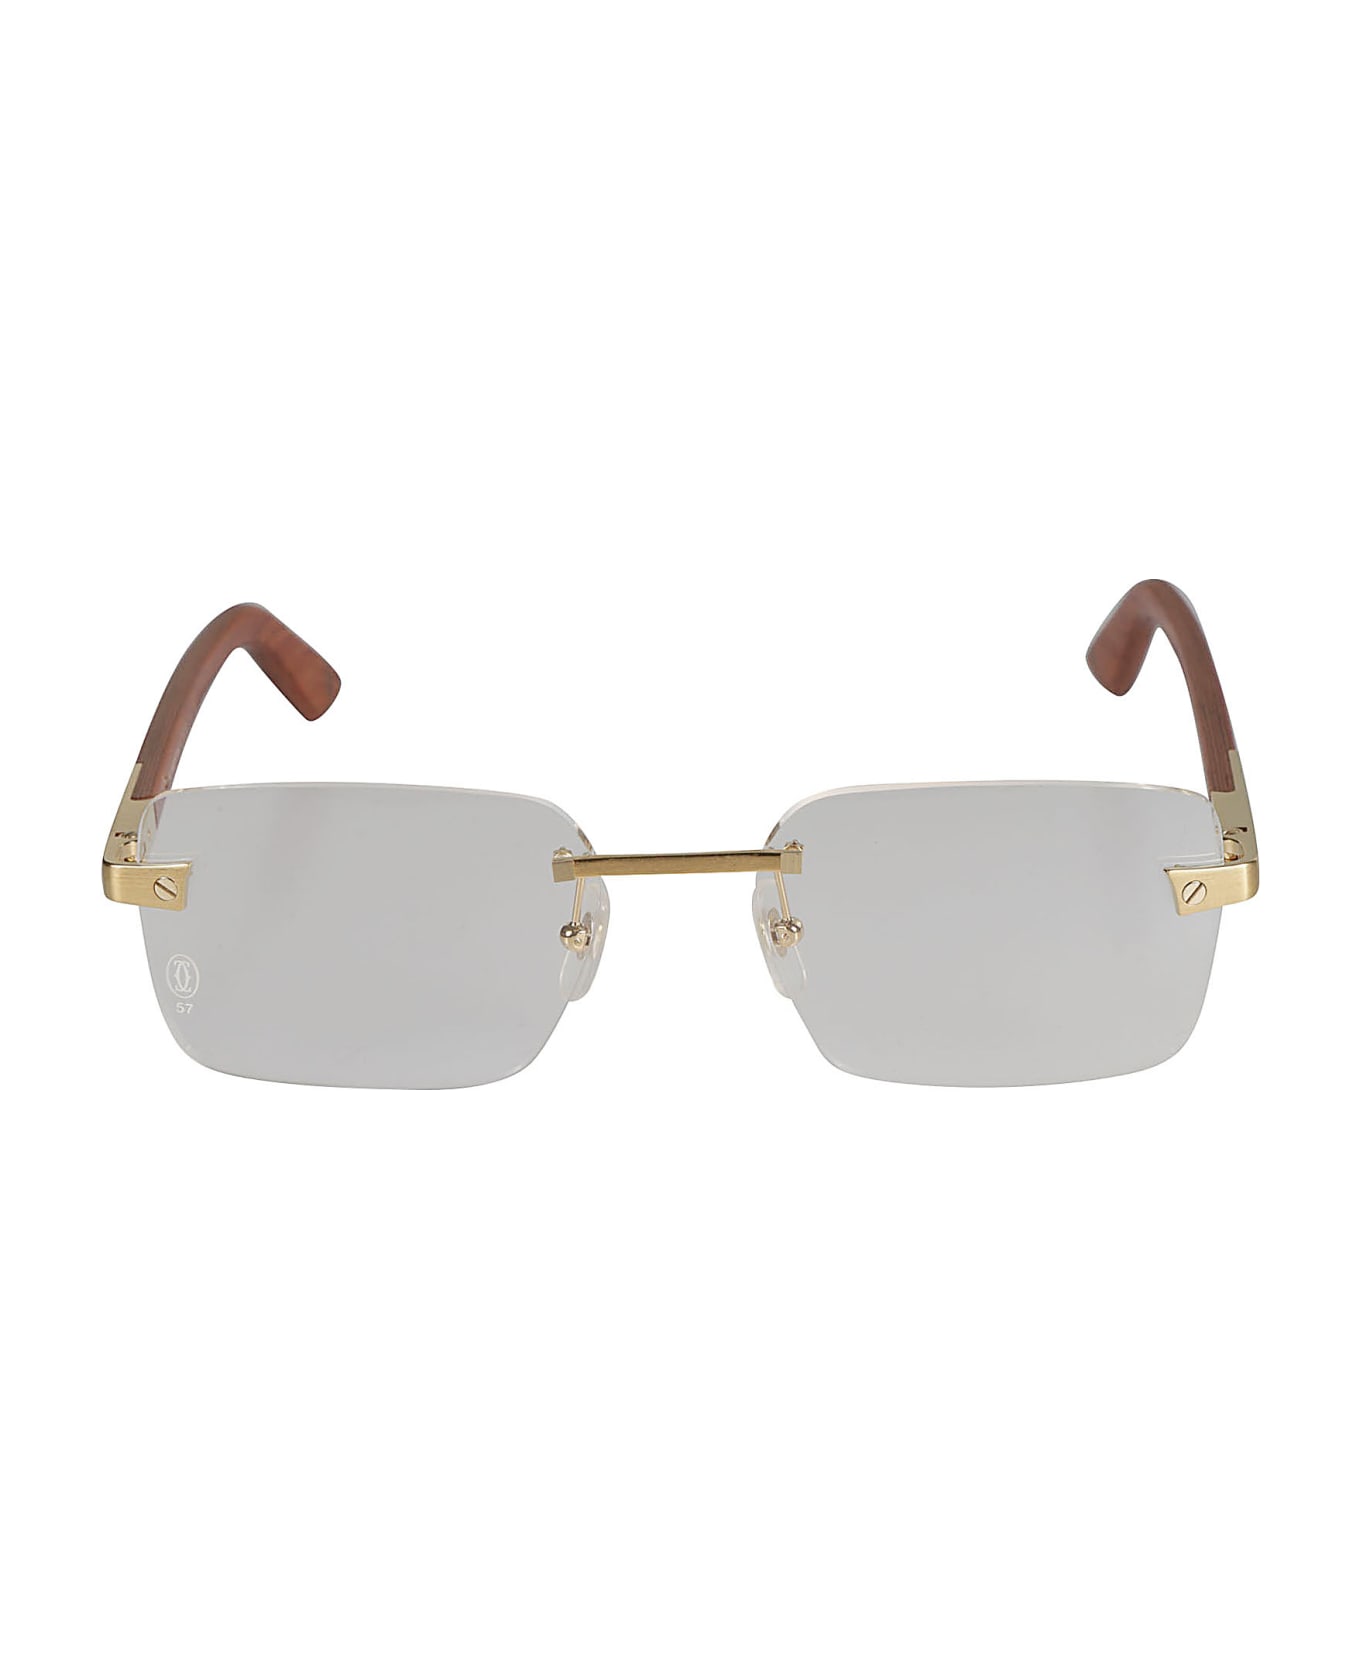 Cartier Eyewear Rimless Rectangular Lense Glasses - Gold/Brown アイウェア